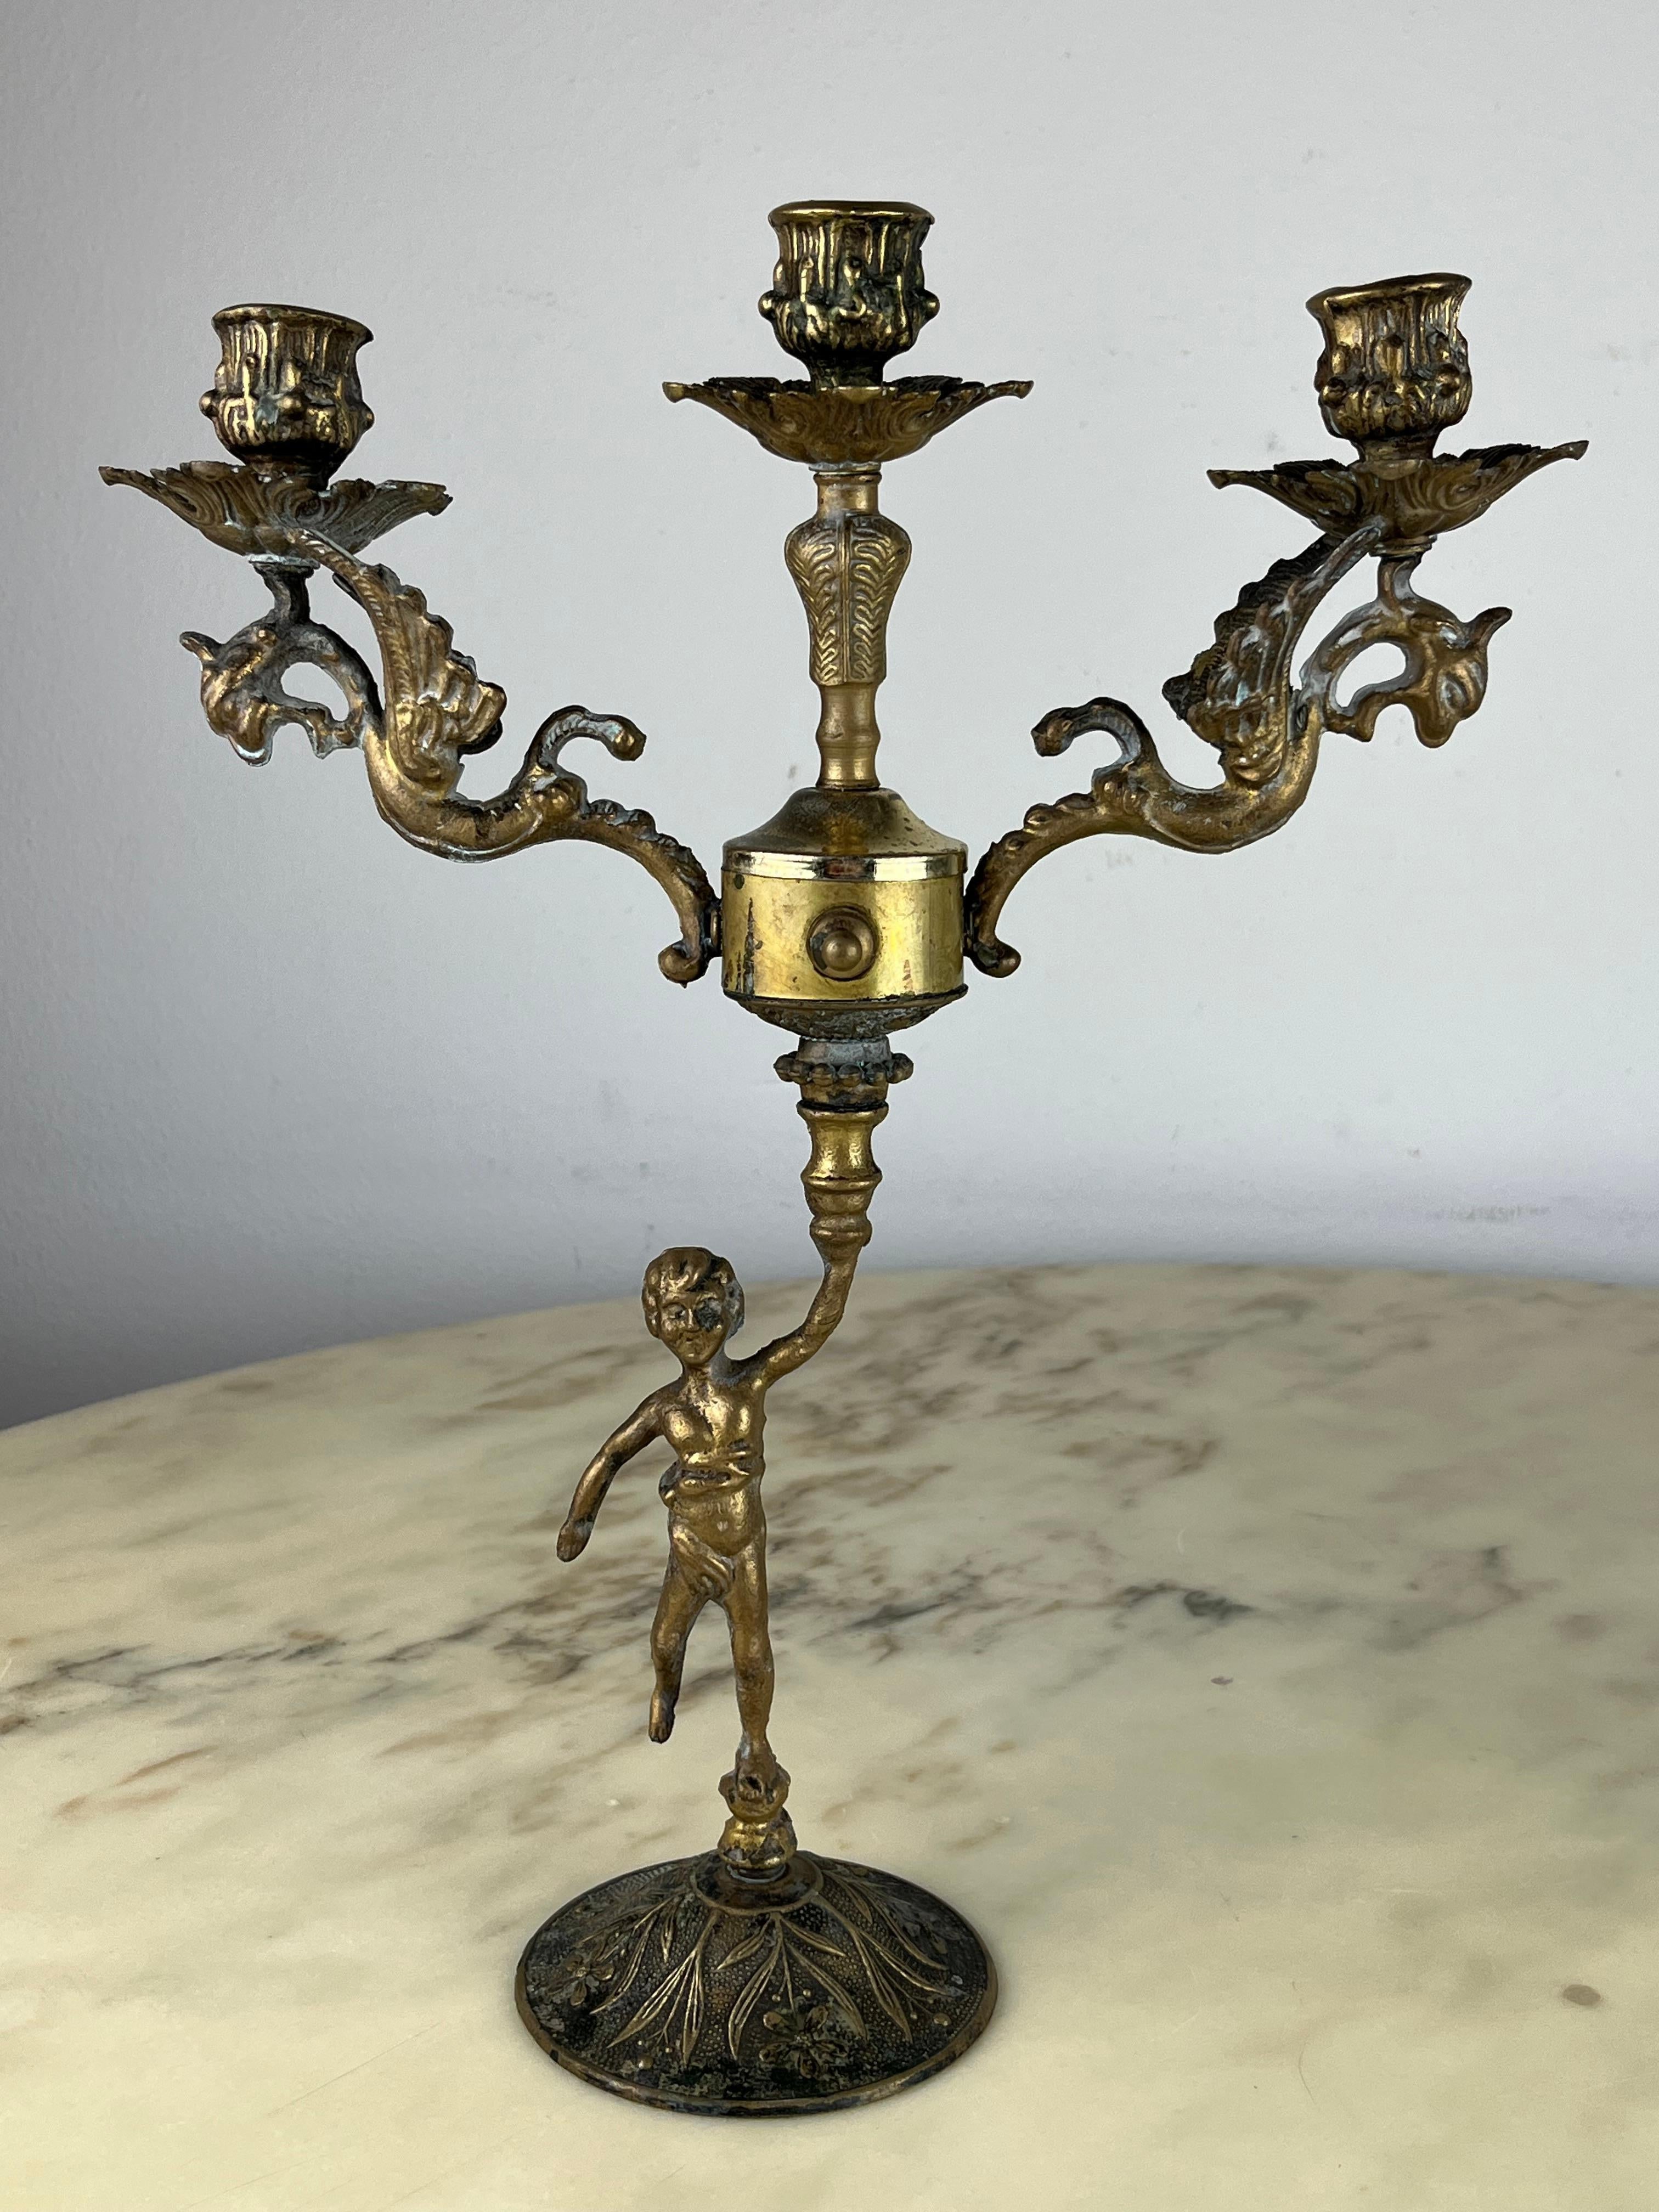 Paar italienische Bronze-Kerzenständer, 1960er Jahre
Sie wurden in einer noblen Wohnung gefunden, sind intakt und in gutem Zustand.
Kleine Anzeichen von Alterung.